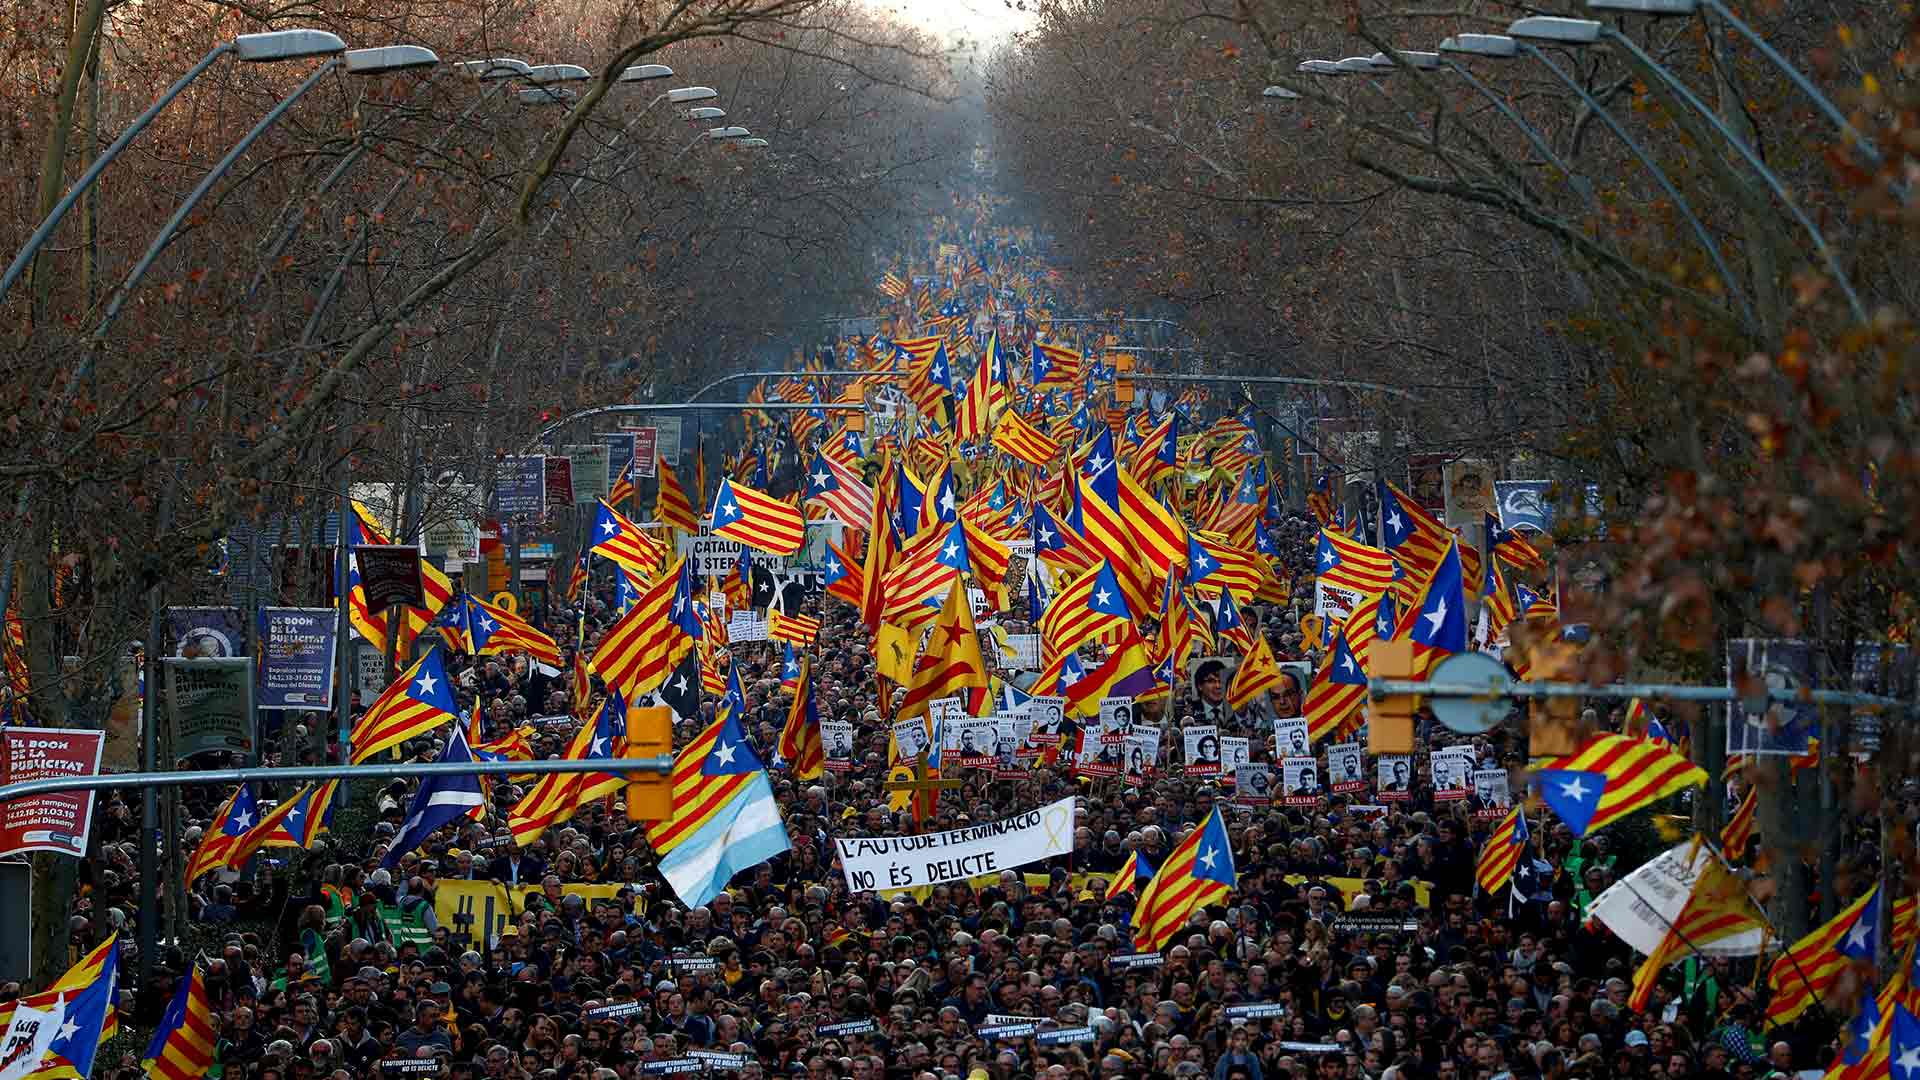 El independentismo catalán comete una “constante violación de derechos civiles” según más de 200 académicos internacionales